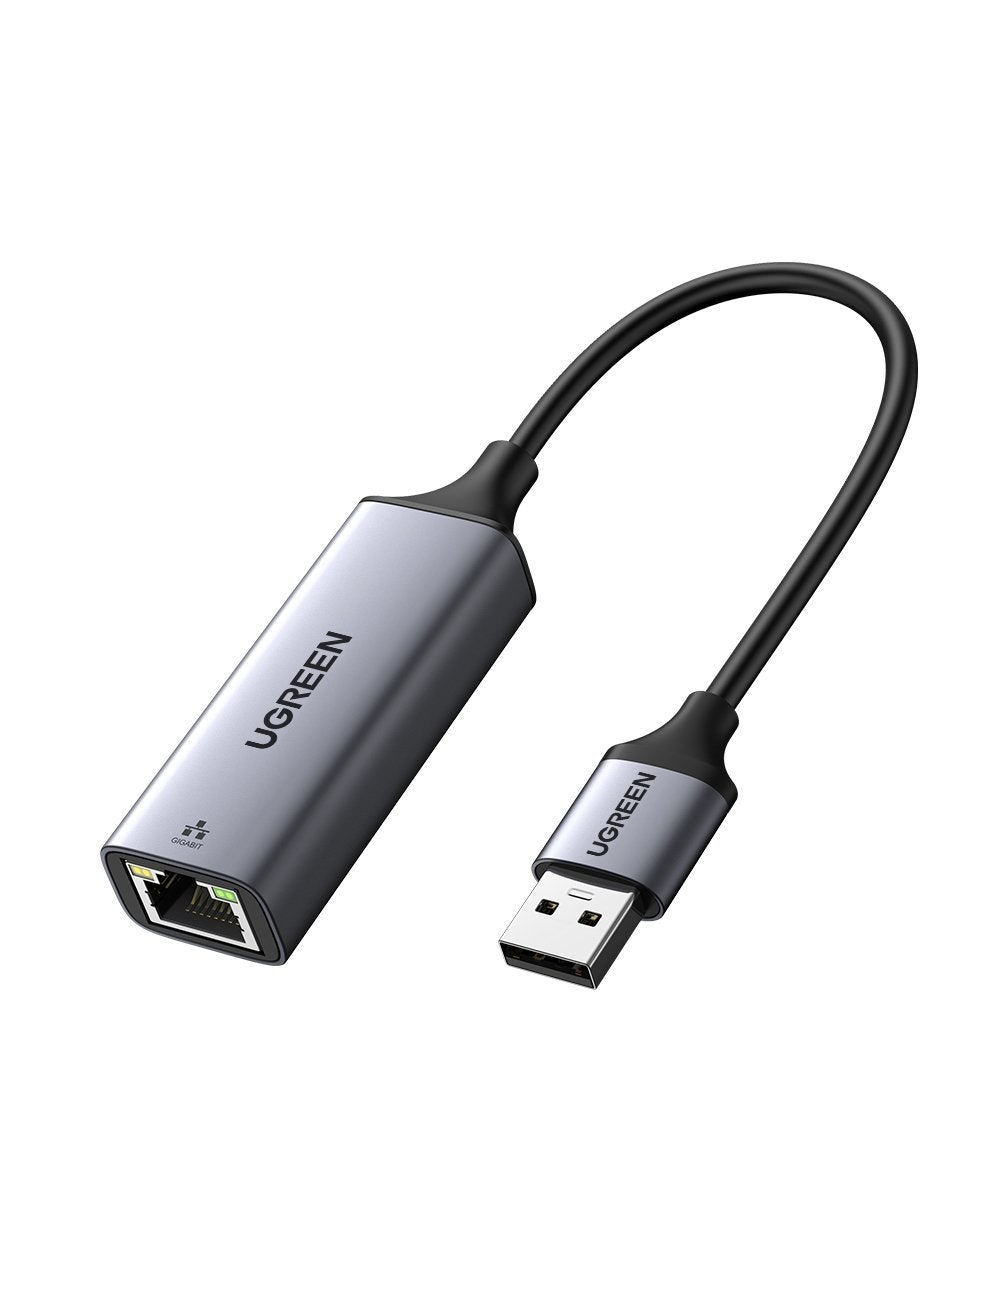 Ugreen Adapter 50922 USB 3.0 - RJ45 gray color - Adapter - Digital/Daten